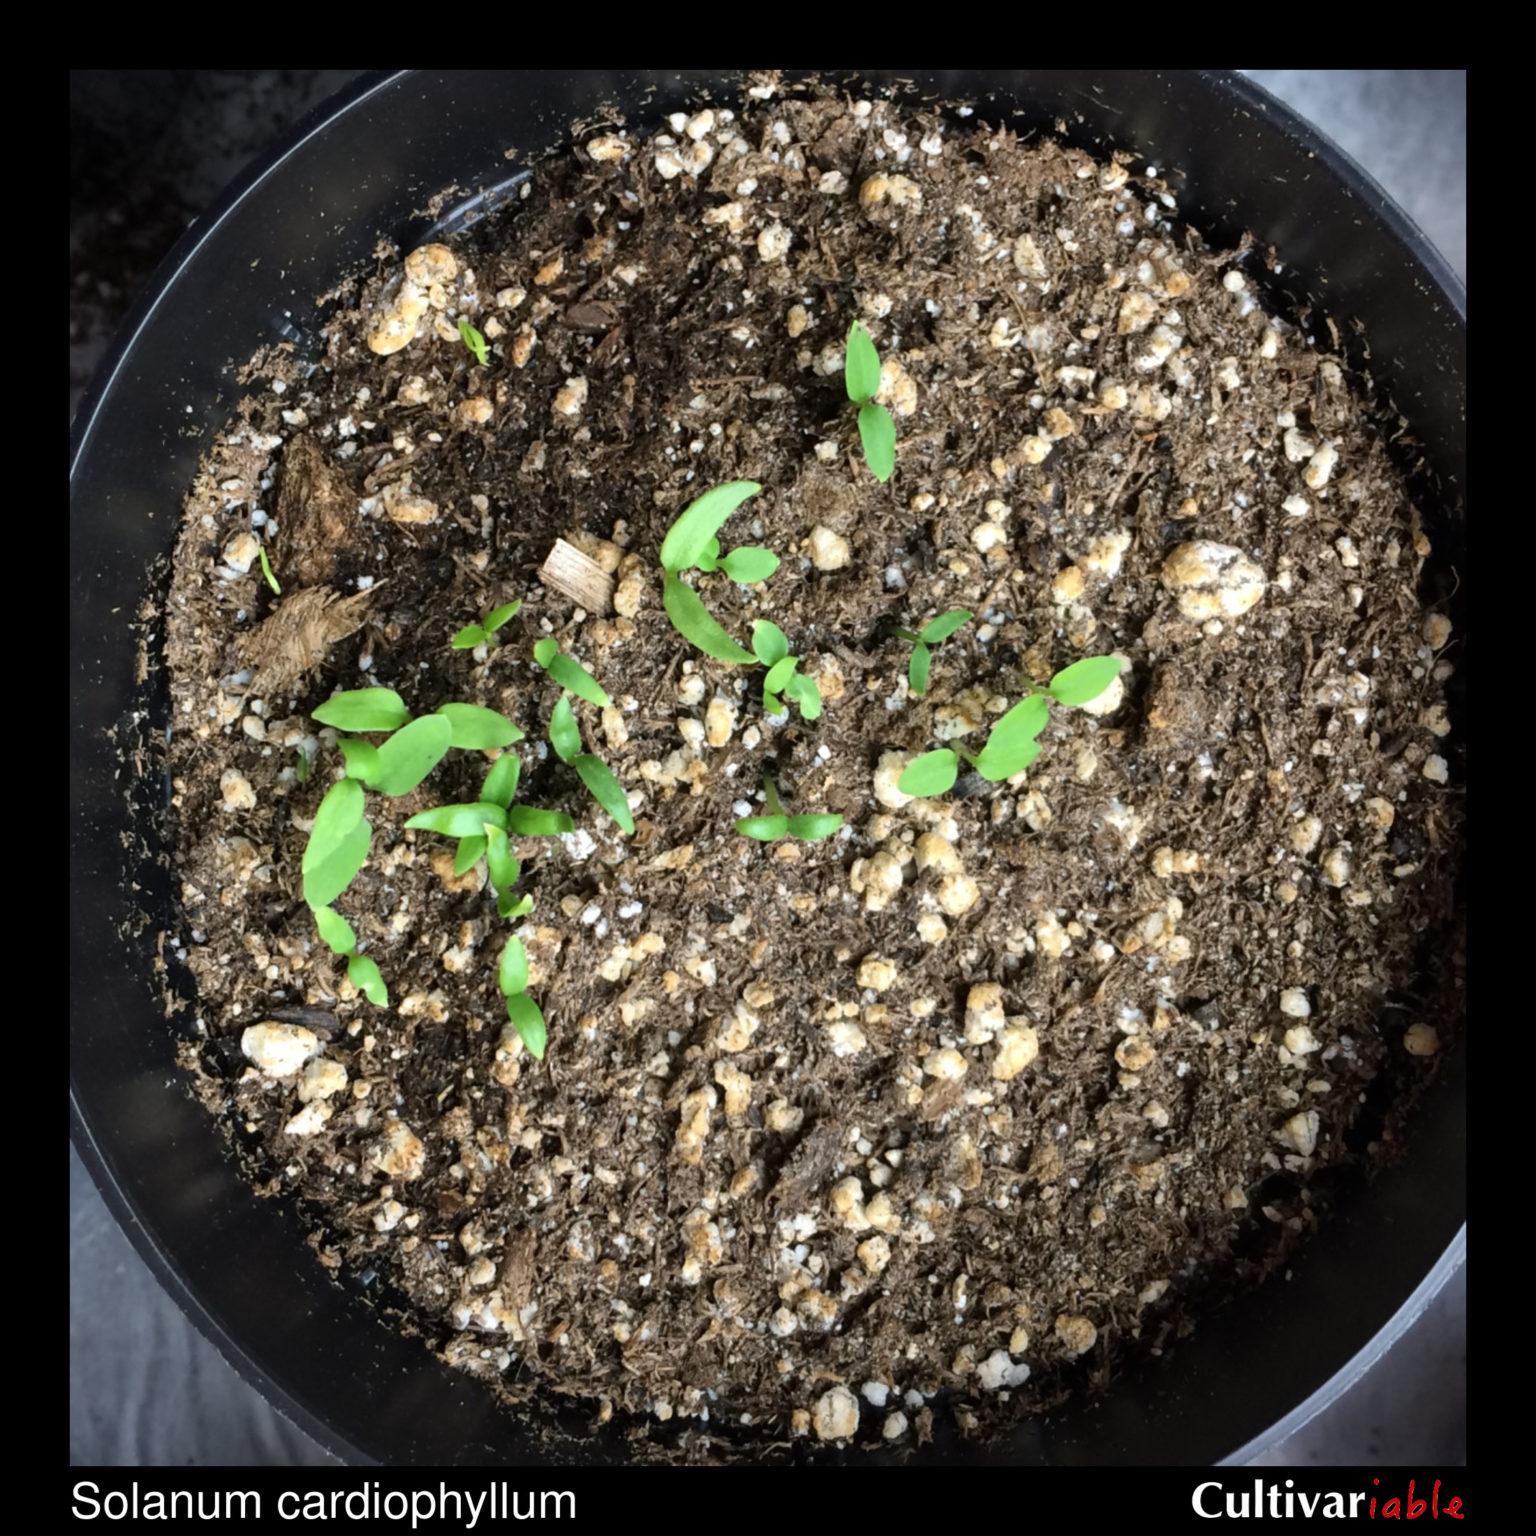 Solanum cardiophyllum - How to Grow Wild Potatoes - Cultivariable